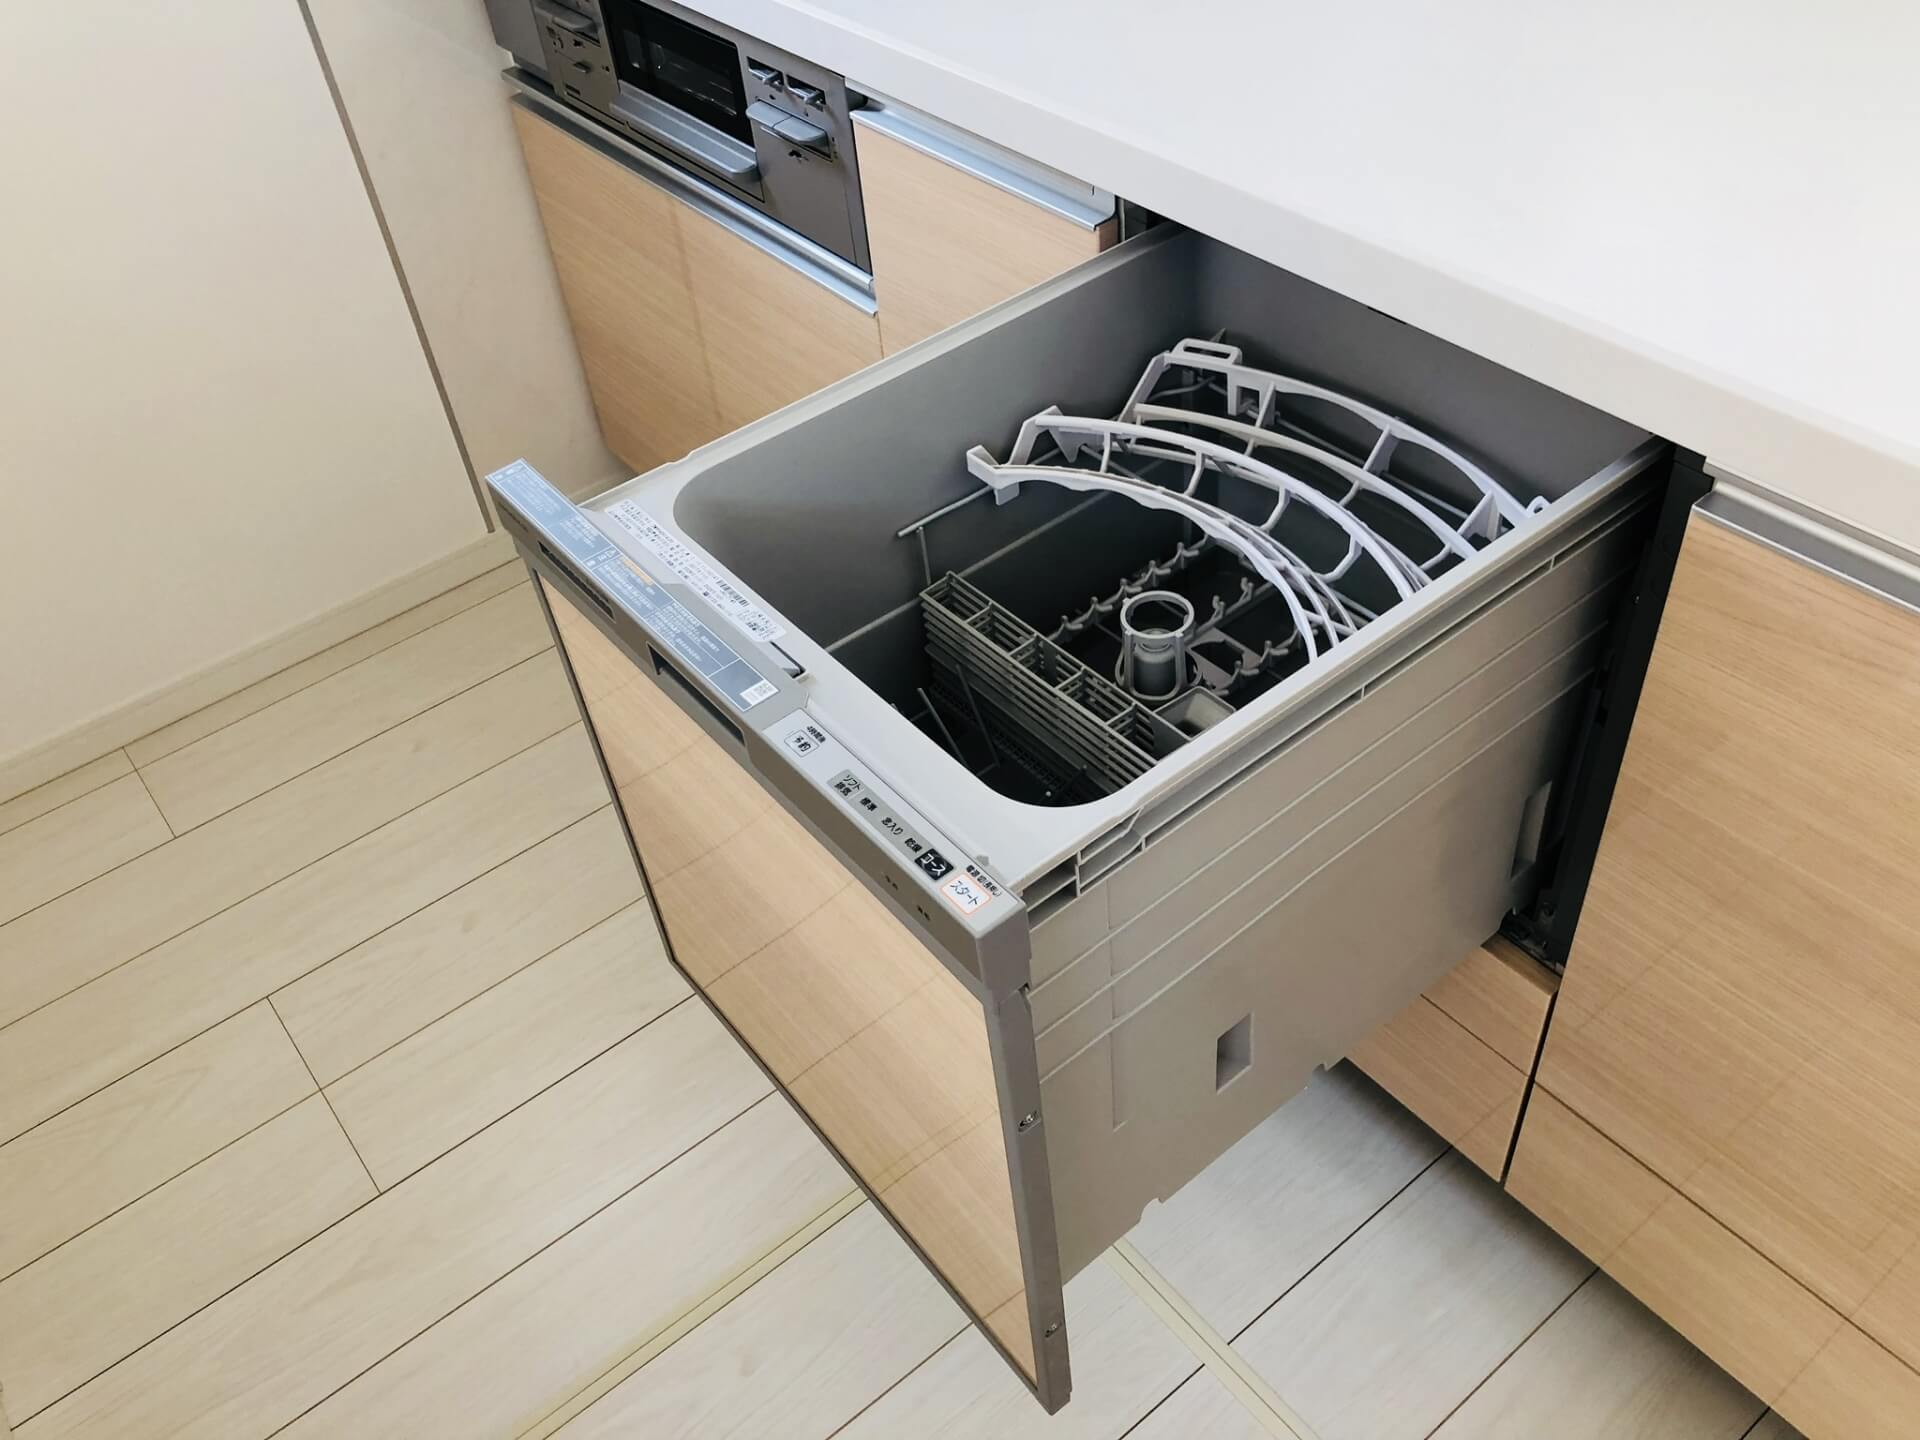 パナソニック食洗機(6万円で購入,1年程使用) - キッチン家電